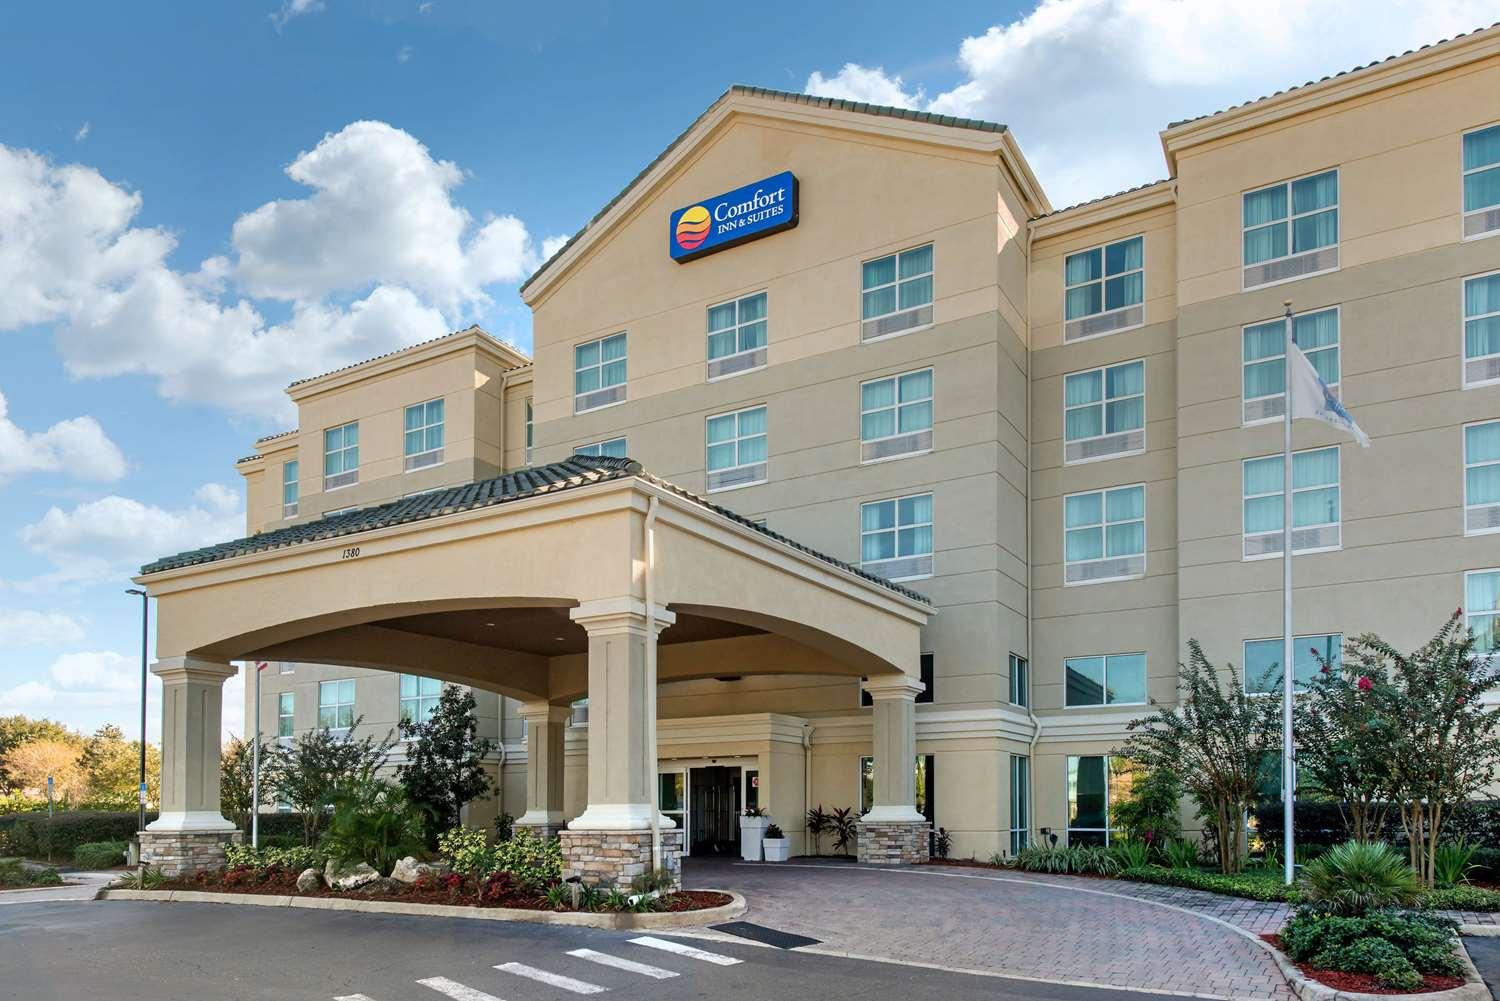 Comfort Inn and Suites in Tavares, FL